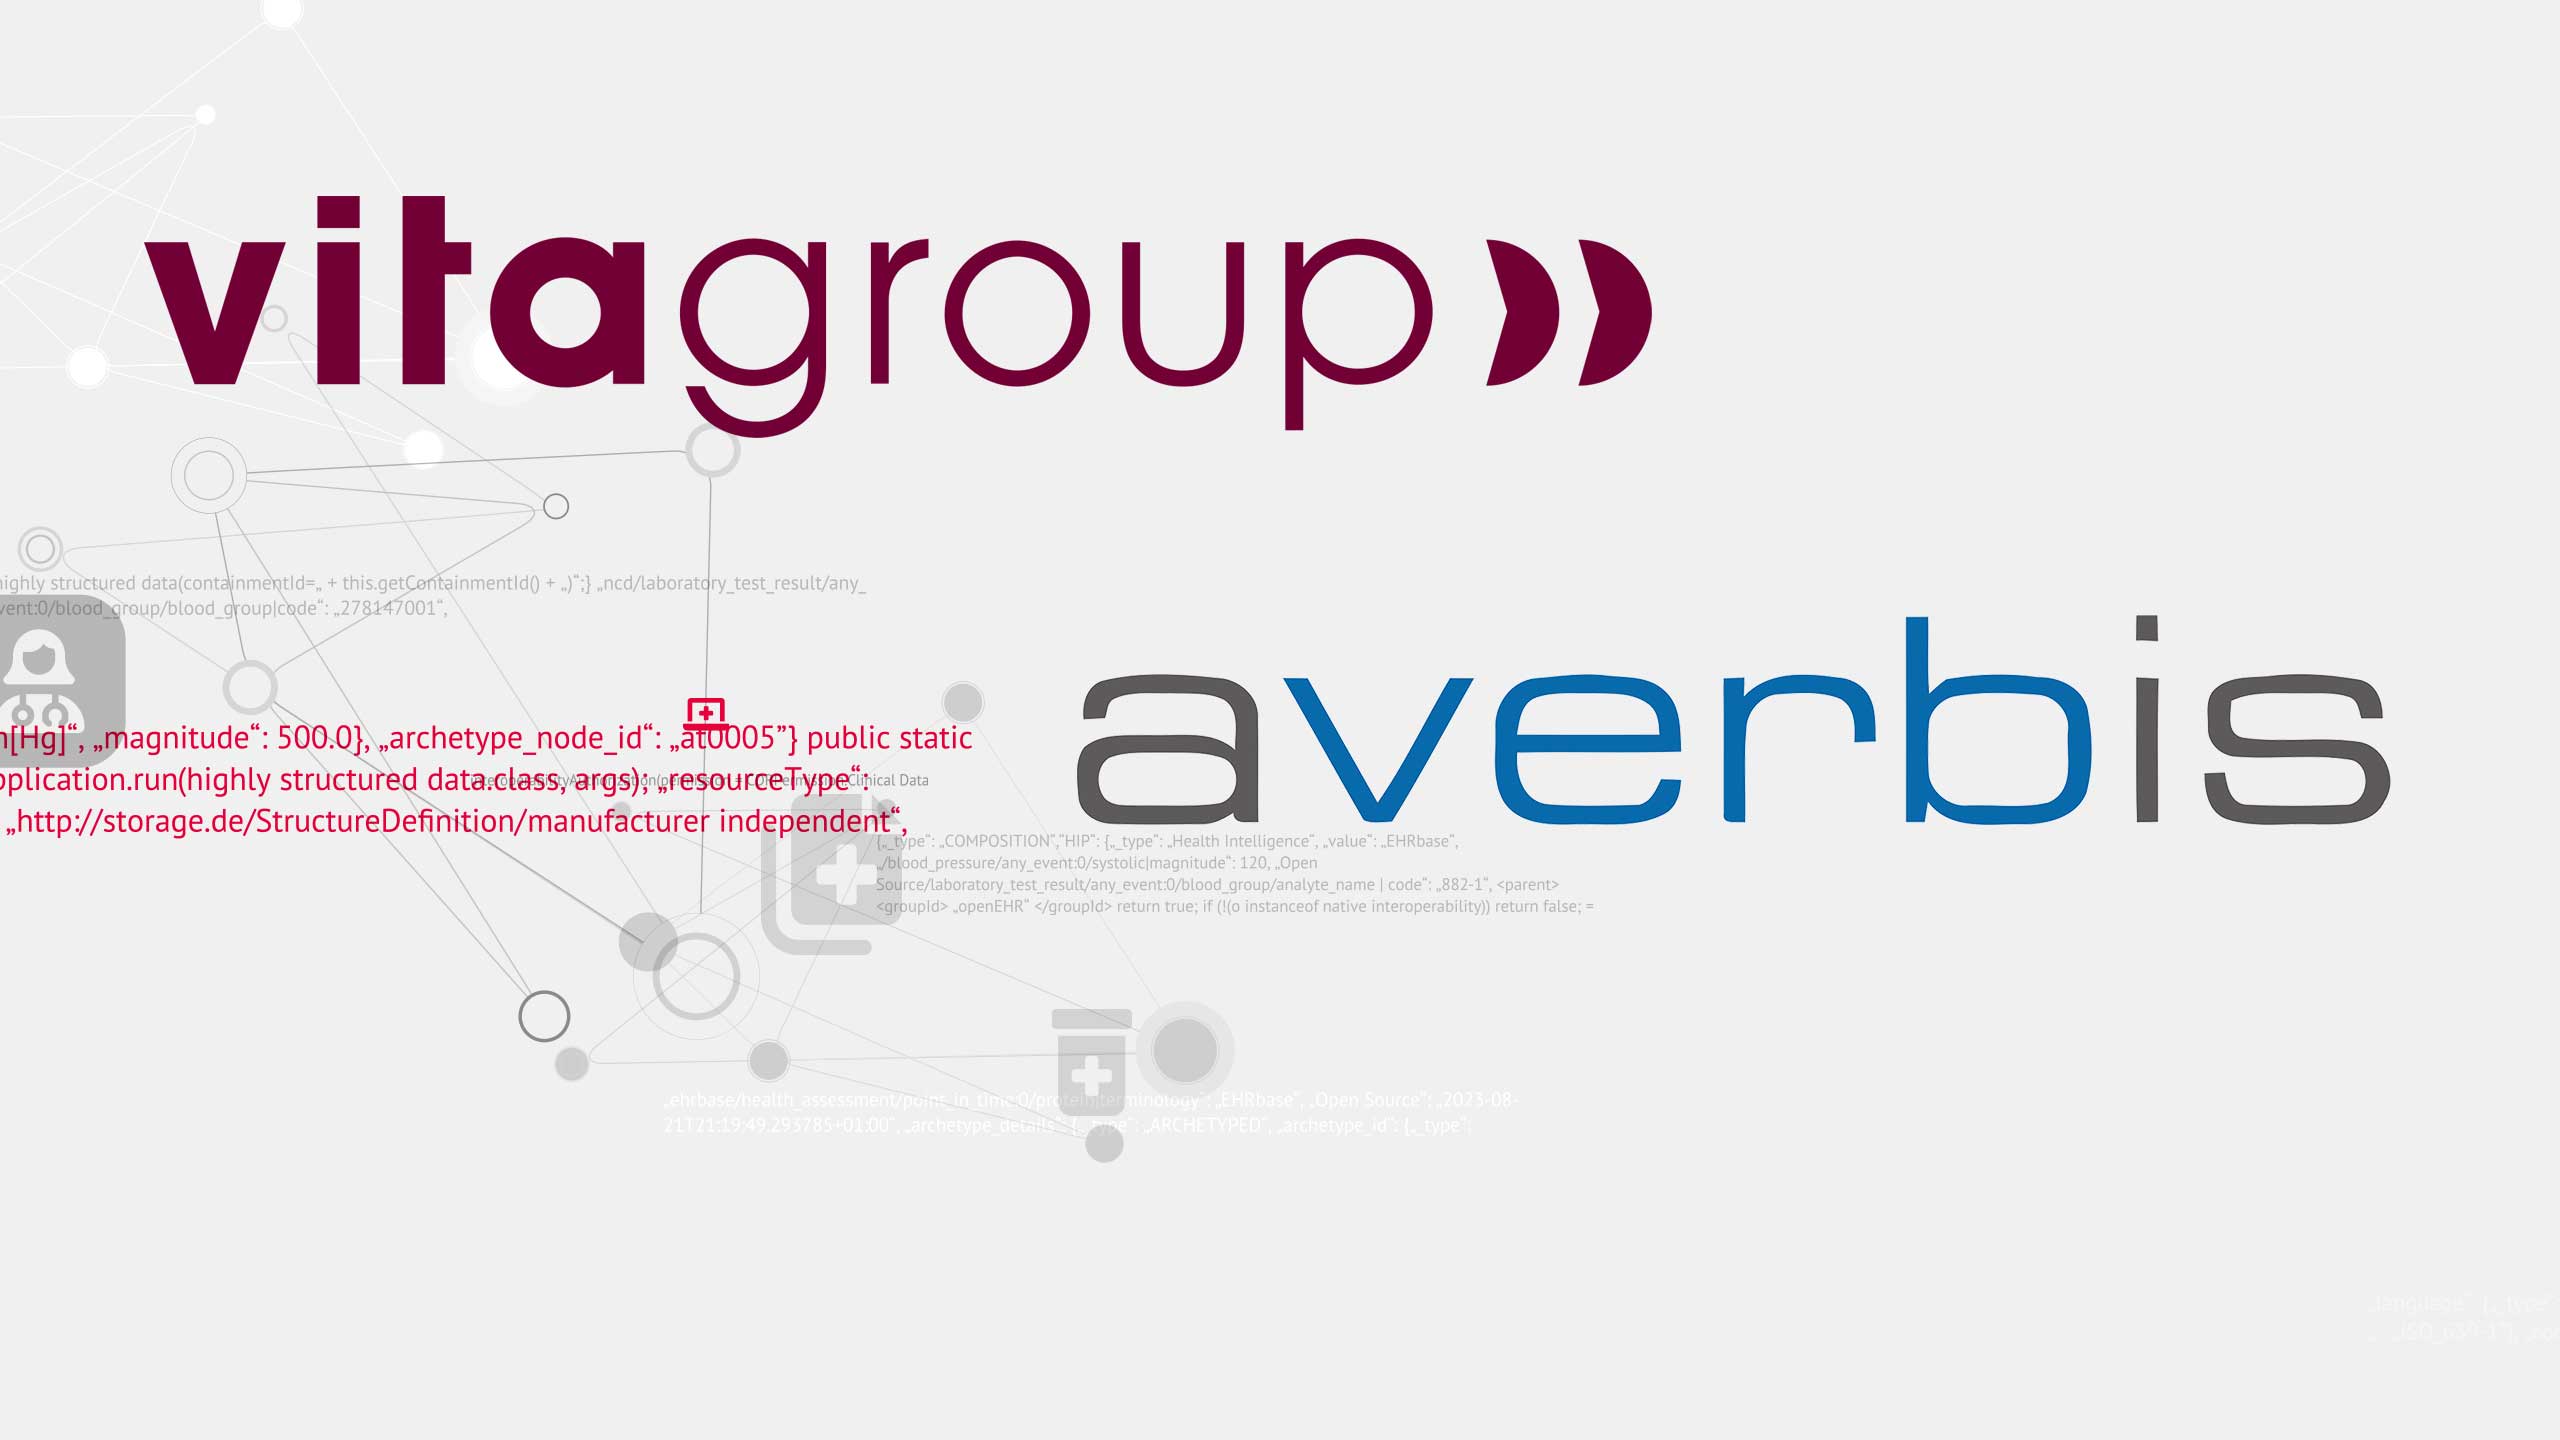 vitagroup und Averbis schließen Partnerschaft